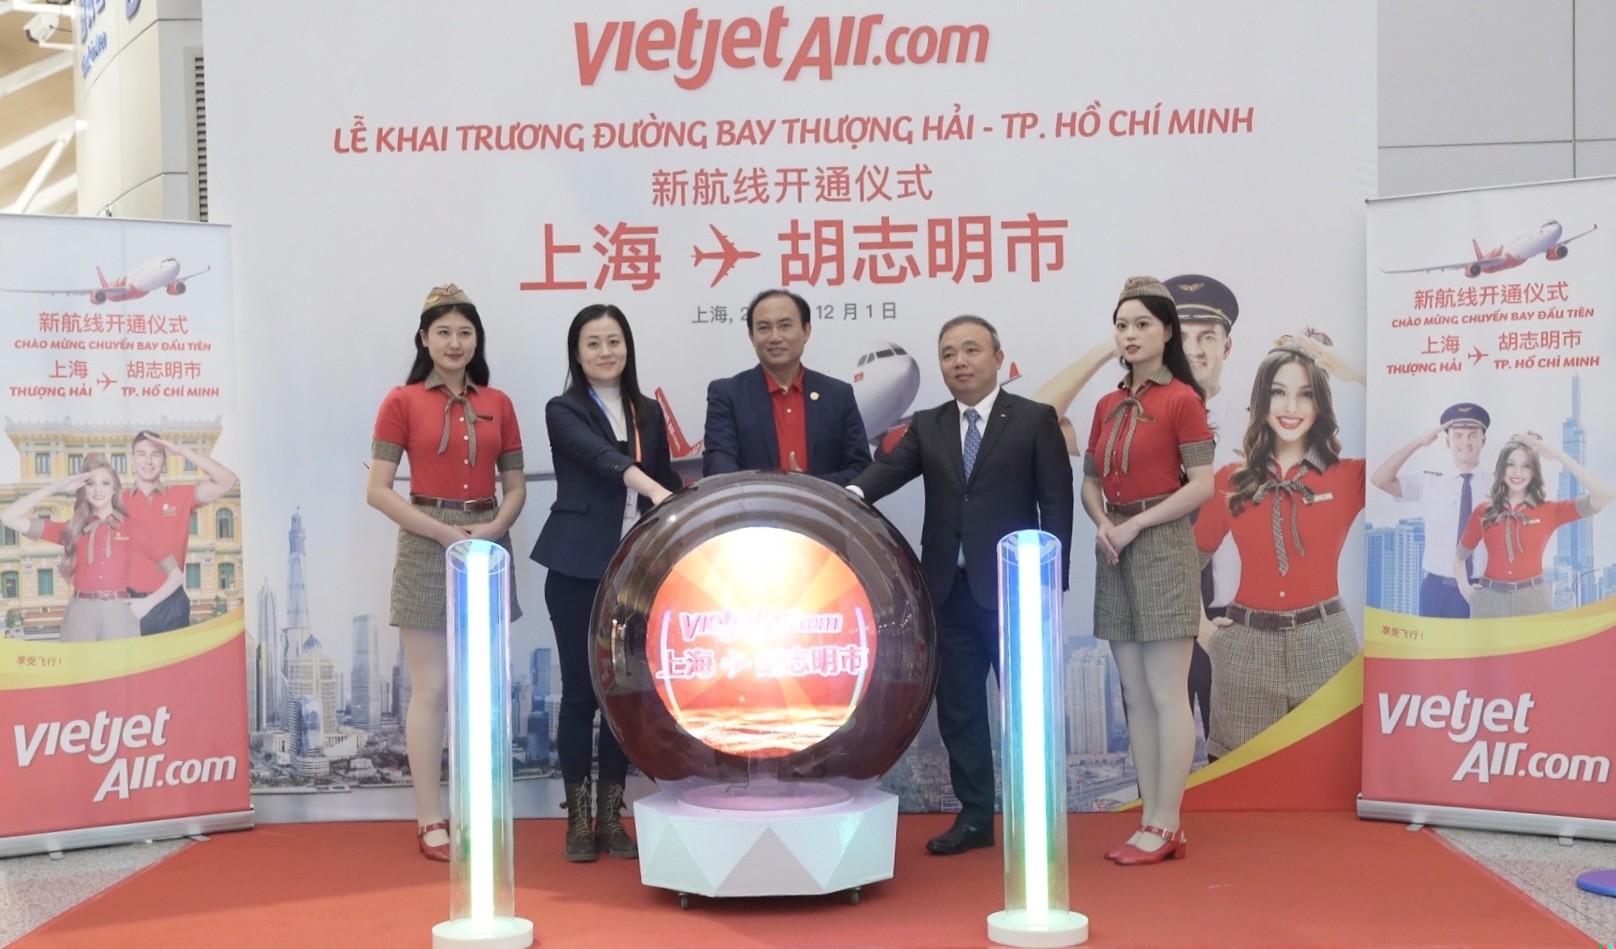 Tin vui: Vietjet vừa khai trương đường bay thẳng giữa Thượng Hải và TP Hồ Chí Minh - ảnh 7